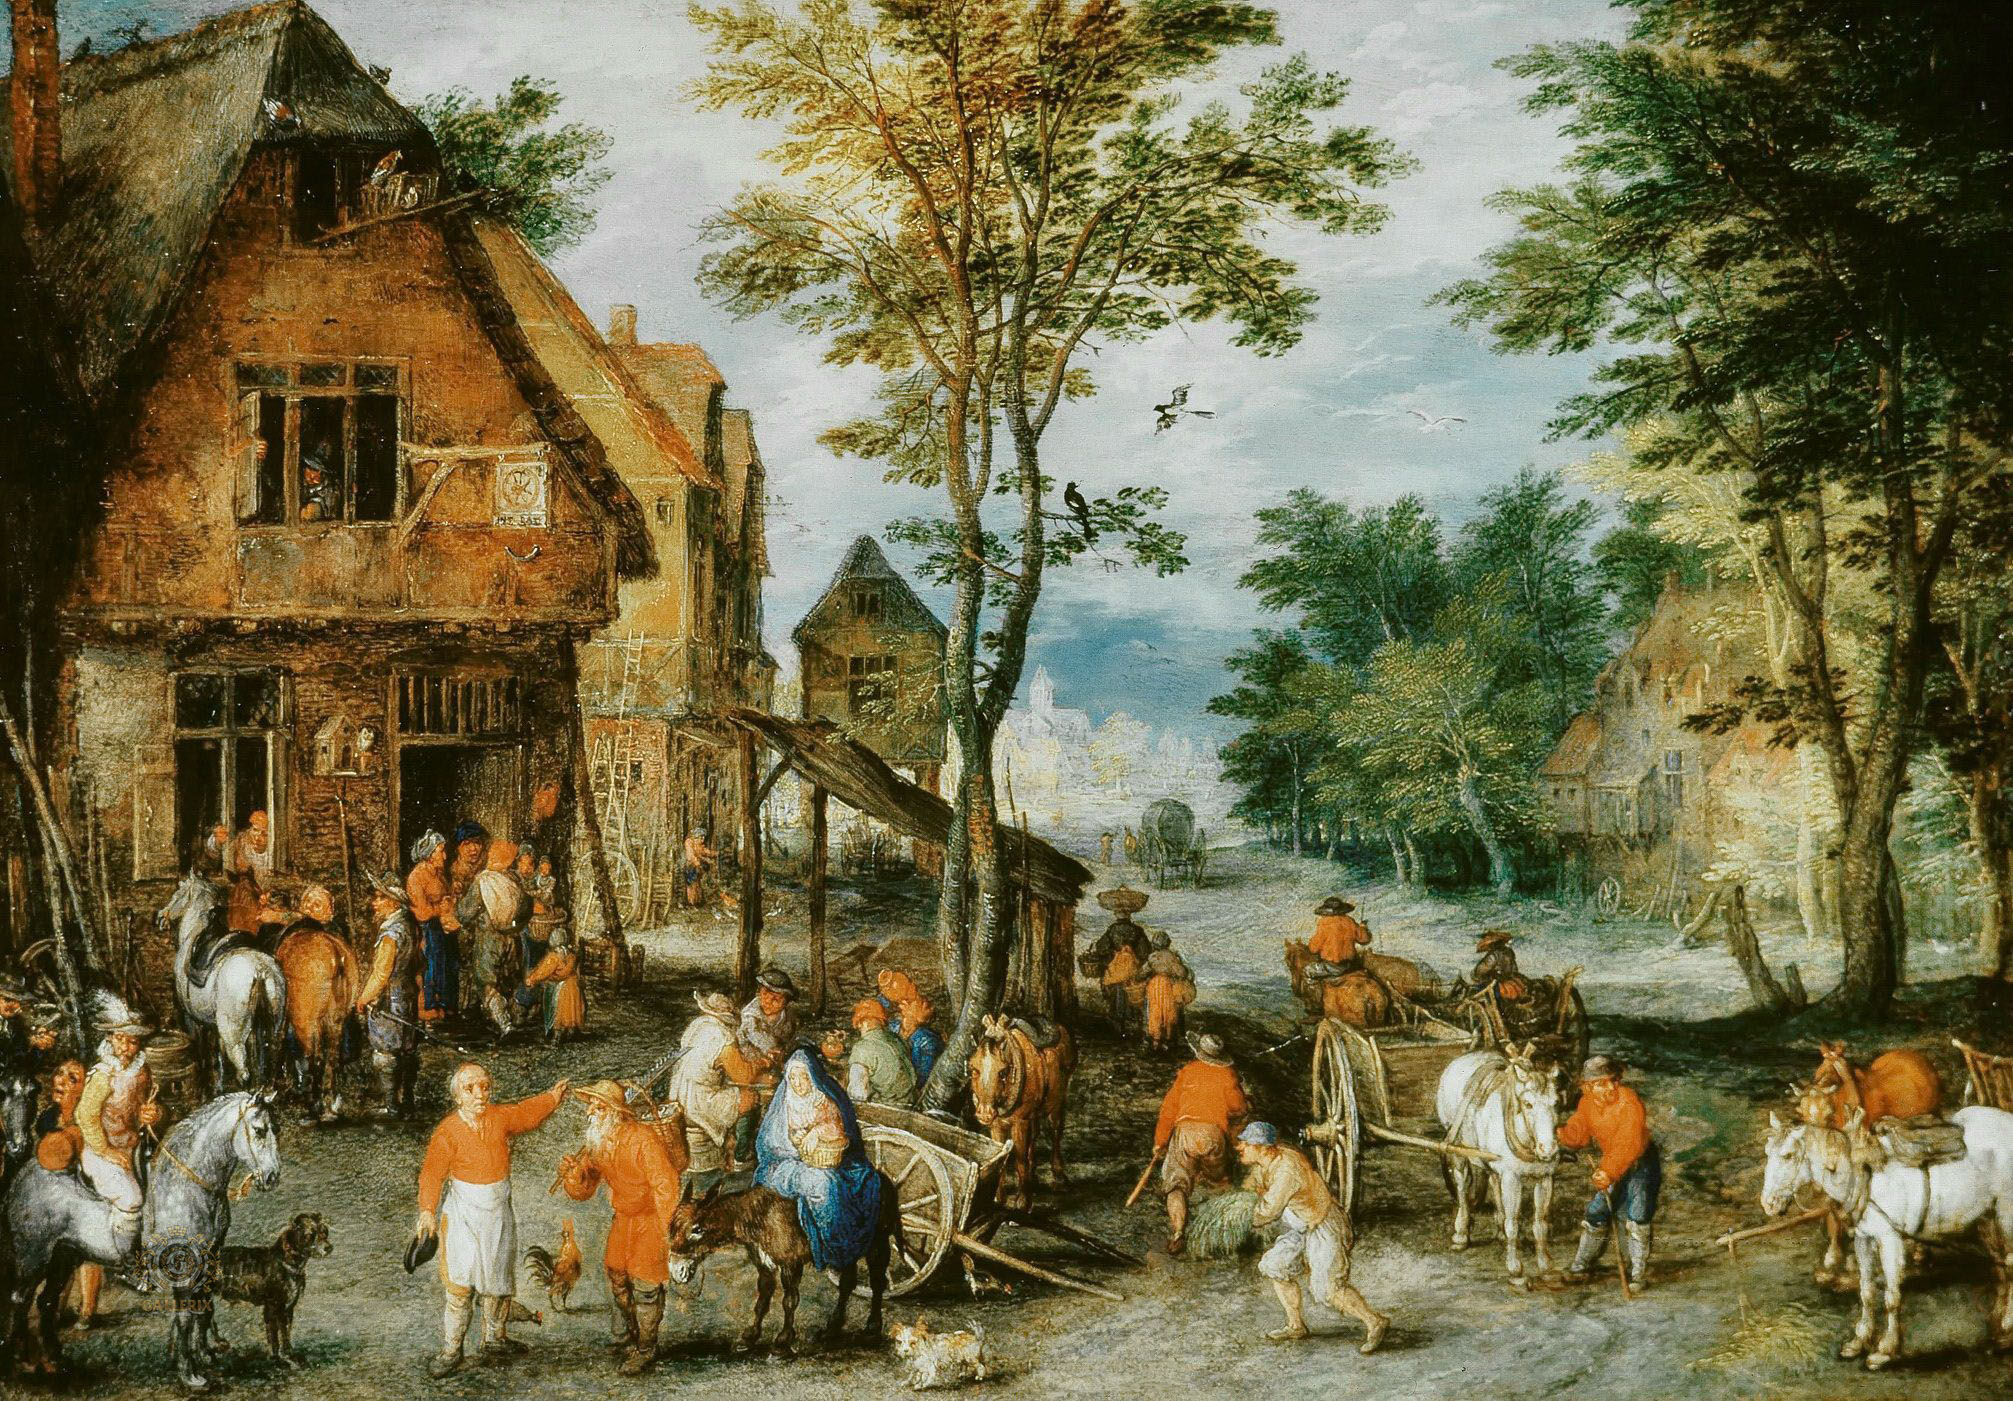 Ян Брейгель Старший. "Фламандская деревня (Бегство в Египет)". 1605. Частная коллекция.